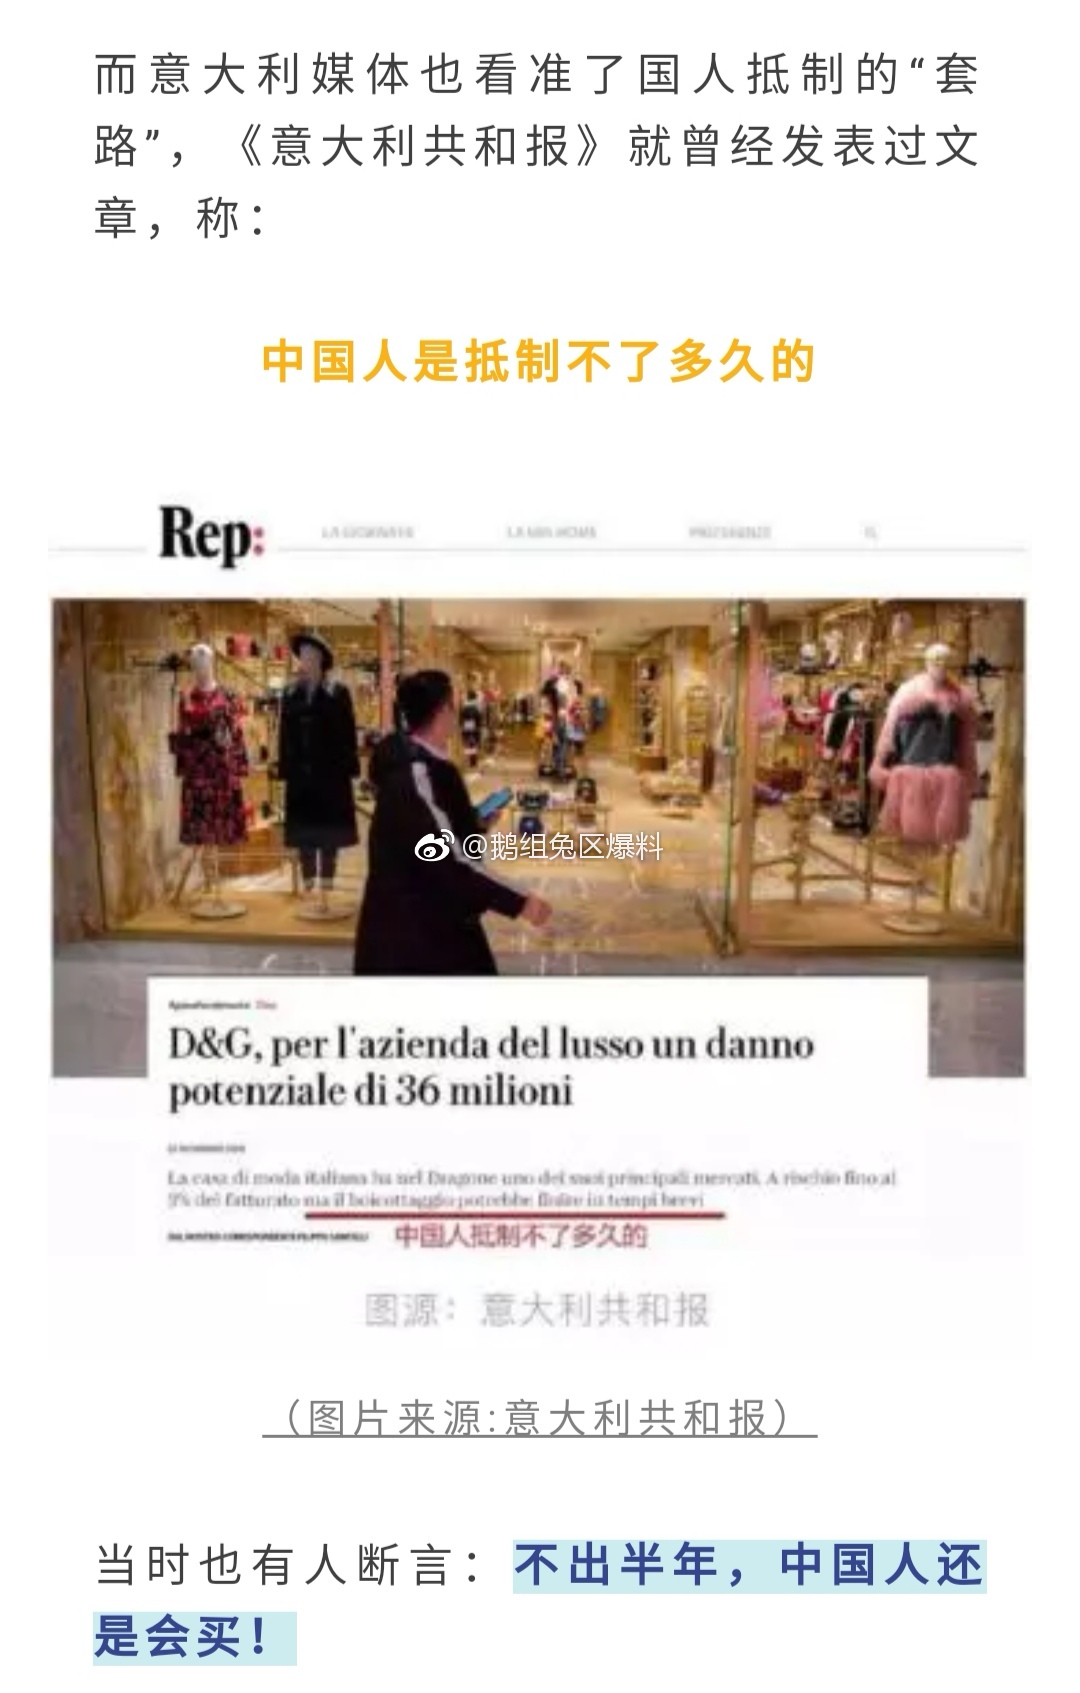 有网友贴出 D&G在中国打折促销，又有好多人去排队购买了…真的那么健忘吗？